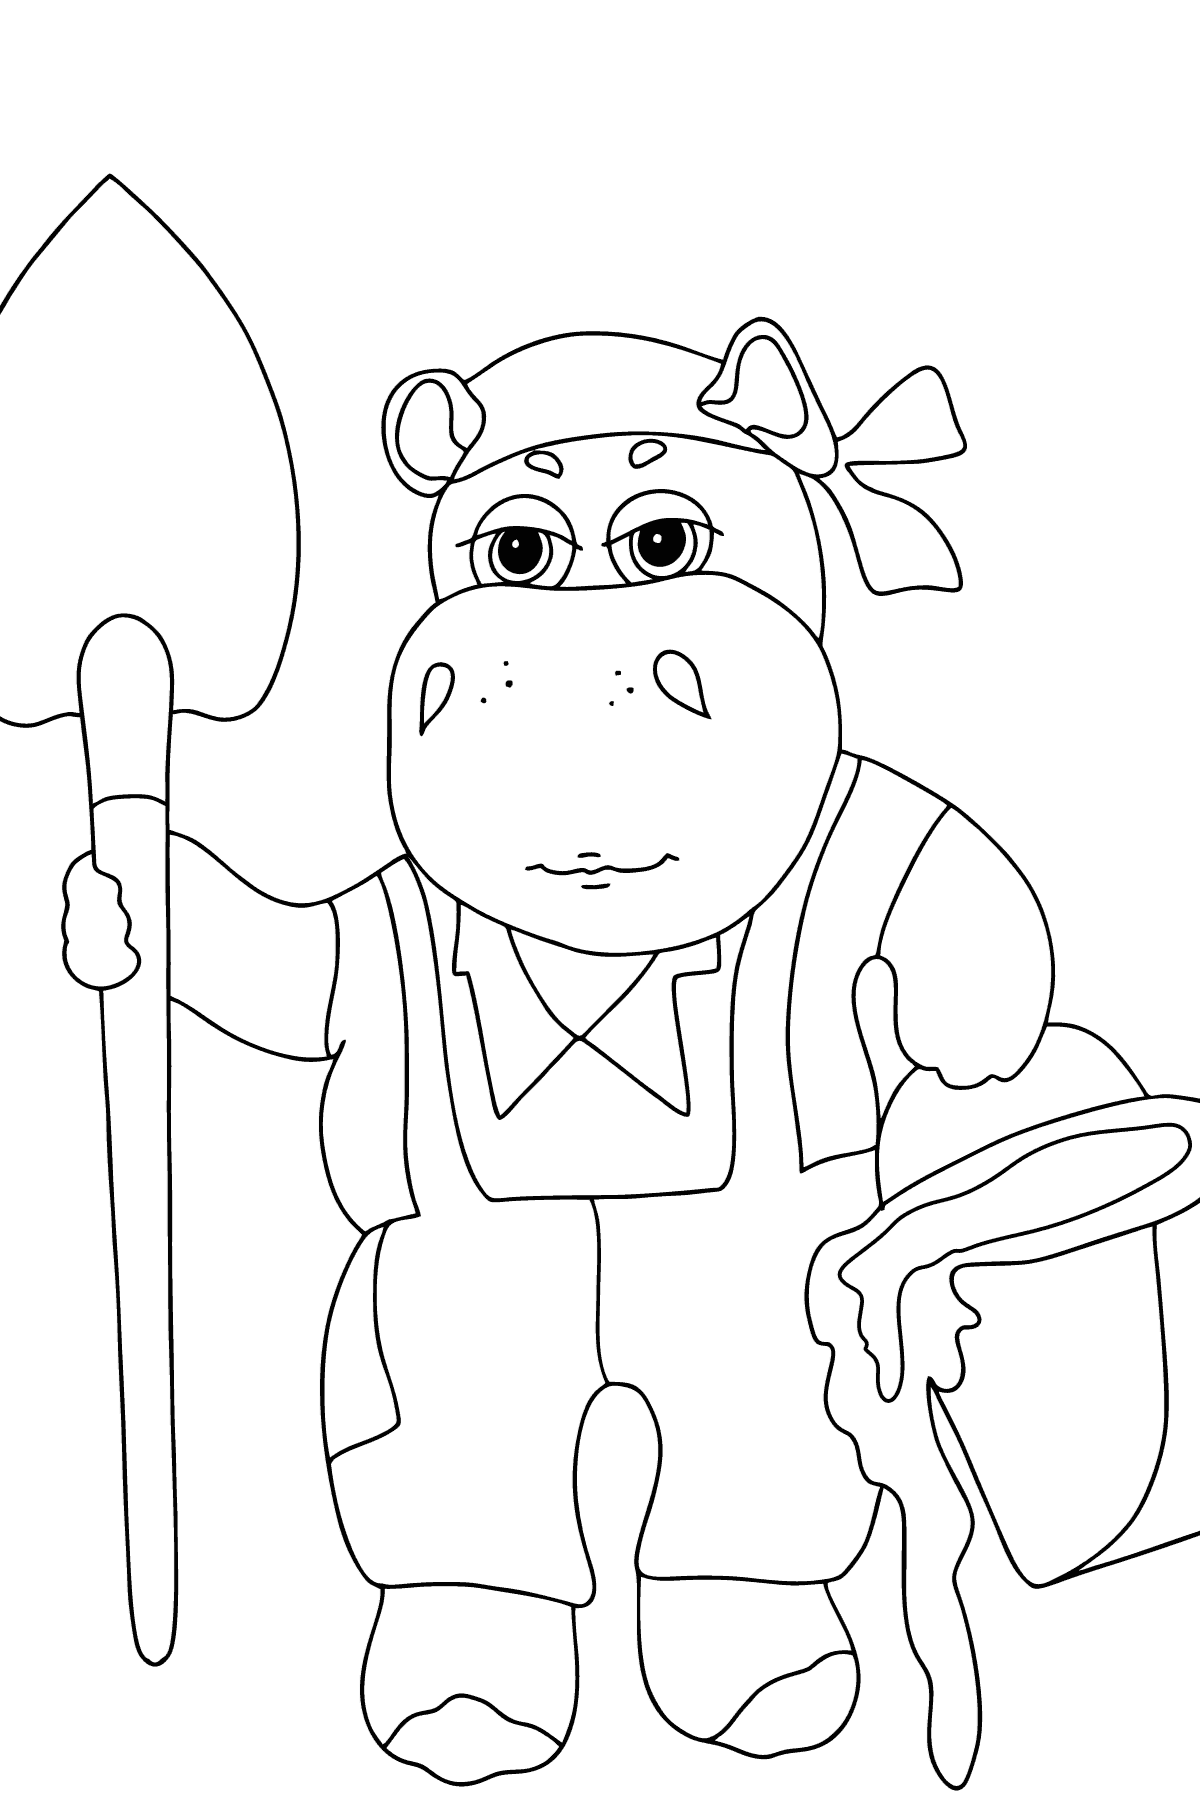 Dibujo de Hipopótamo en el jardín (sencillo) para colorear - Dibujos para Colorear para Niños